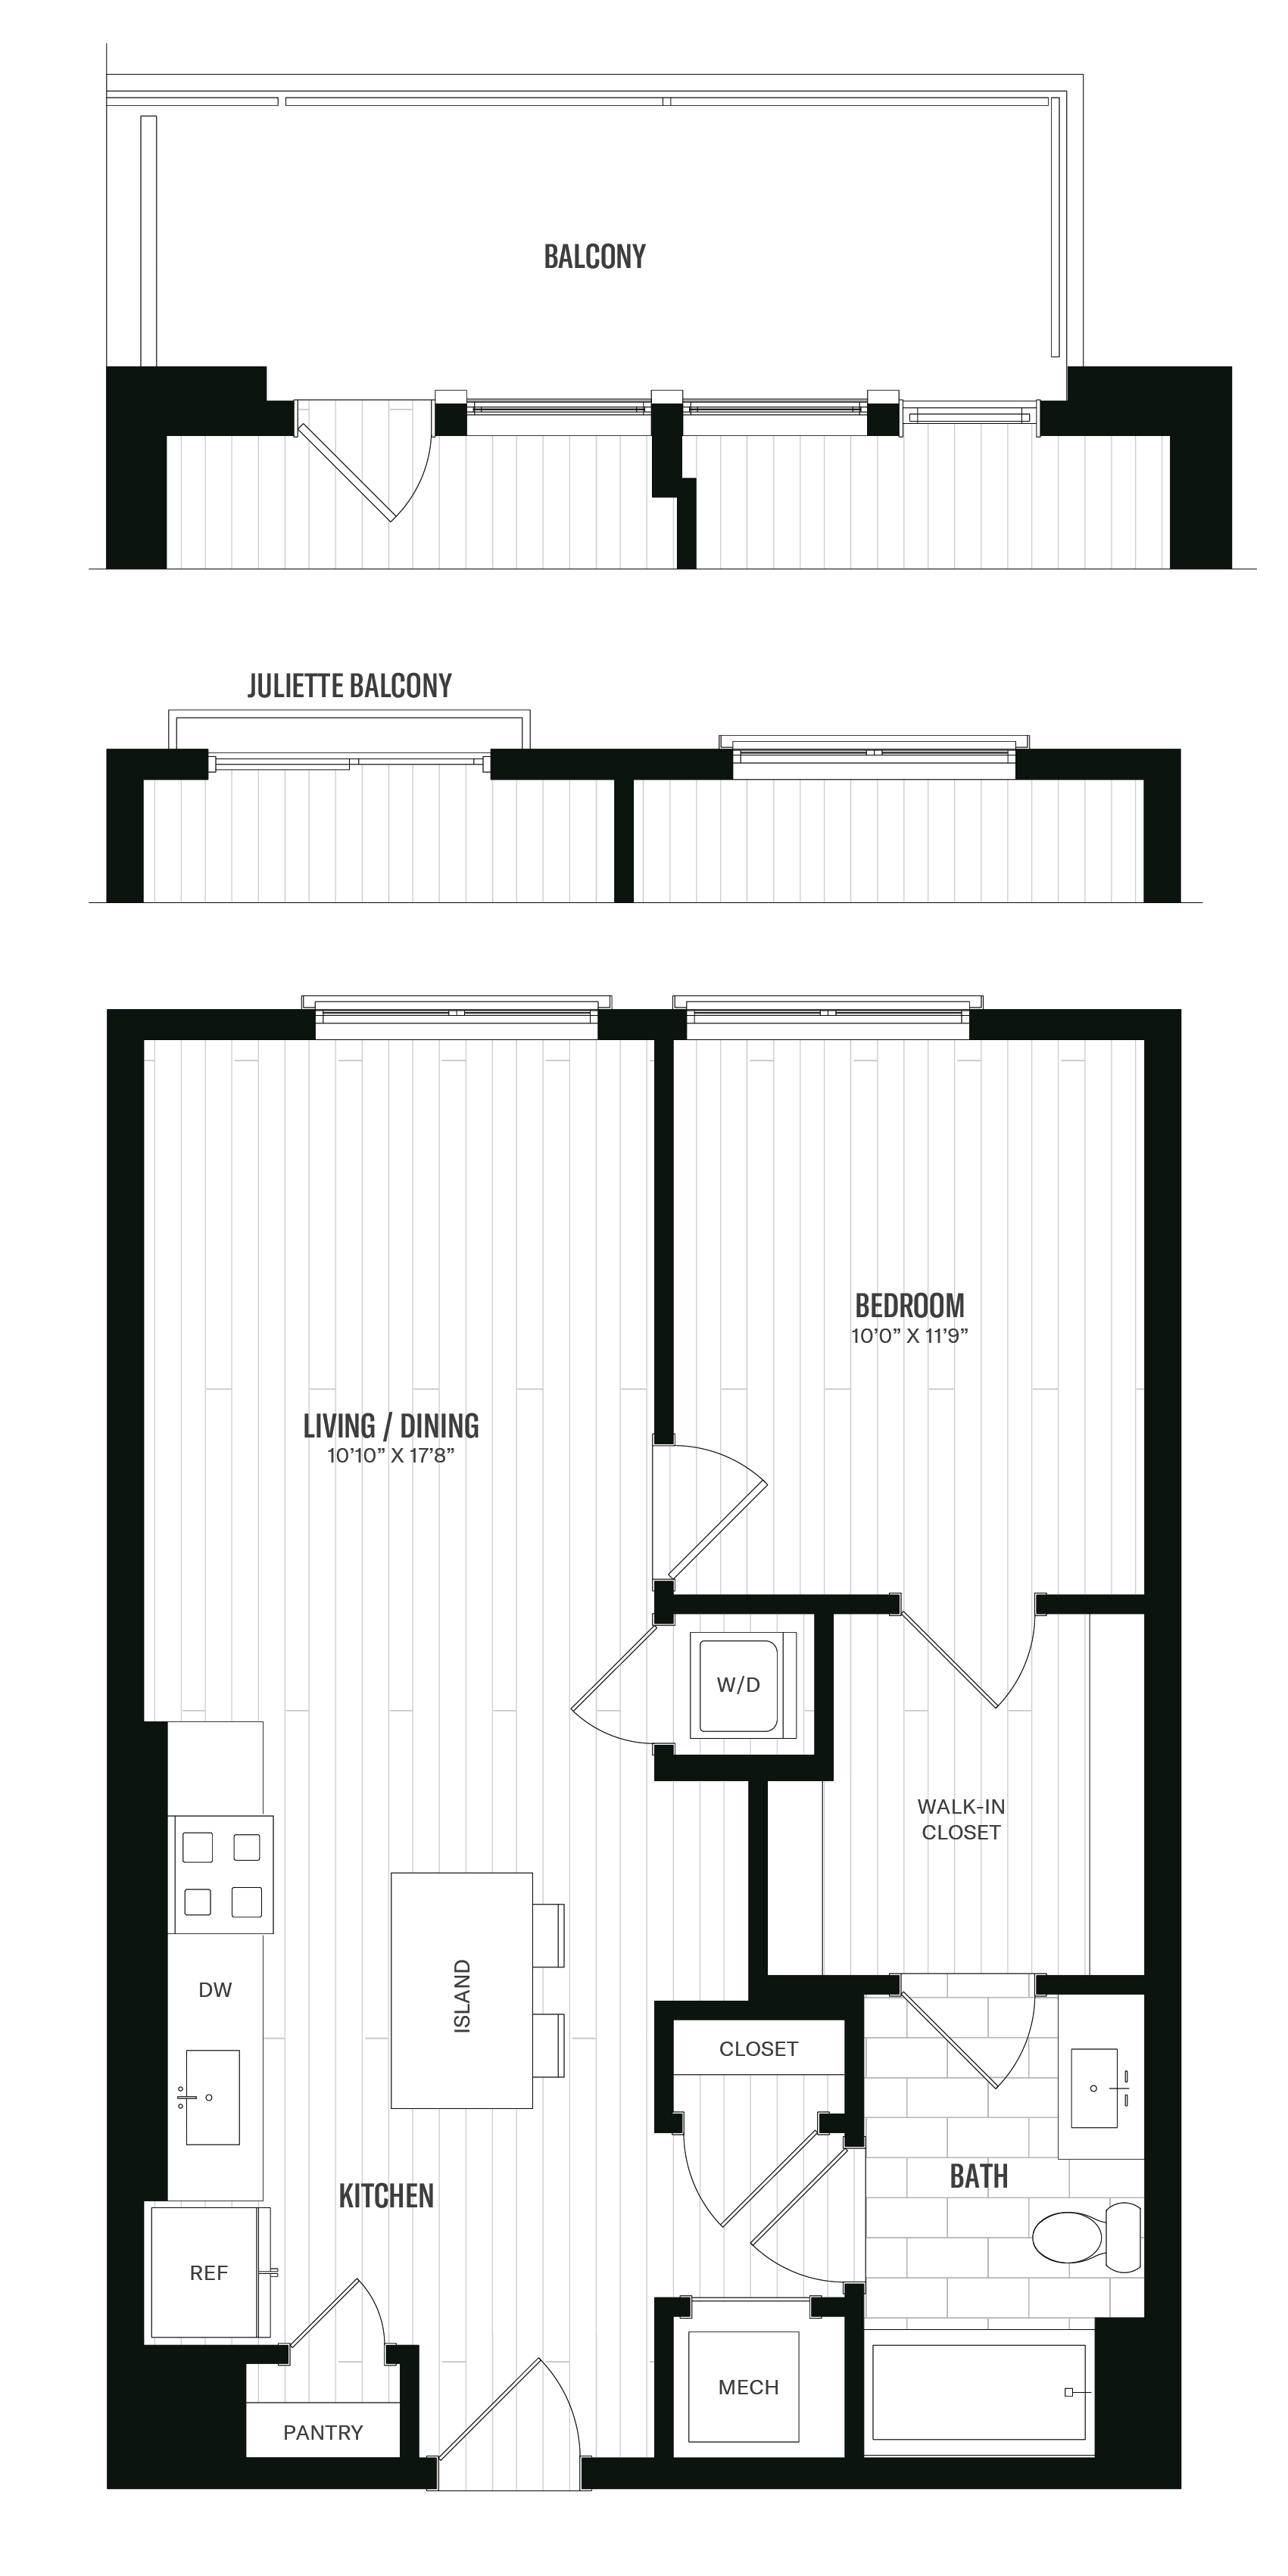 Floorplan image of unit 661